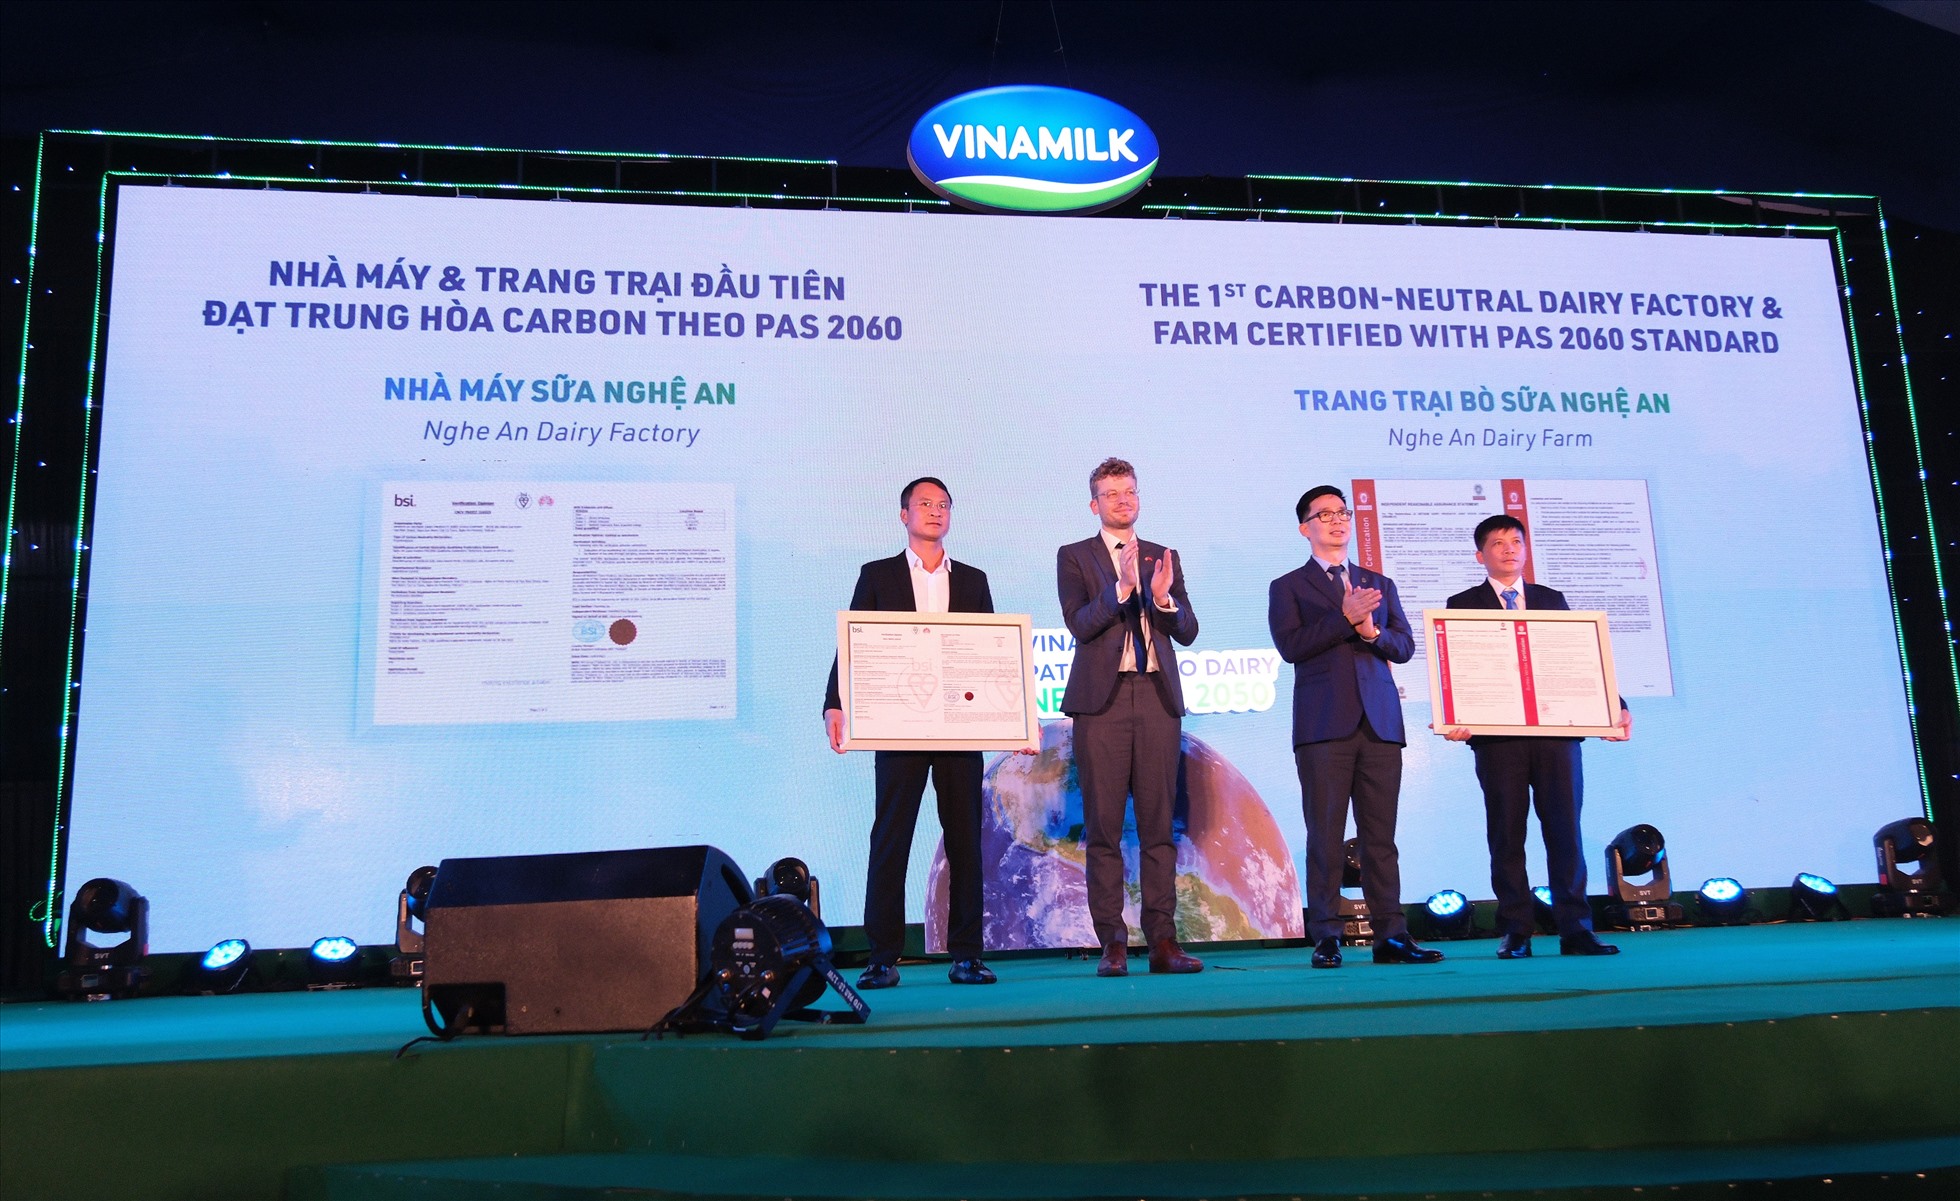 Đại diện các tổ chức quốc tế trao chứng nhận trung hòa carbon cho lãnh đạo nhà máy sữa và trang trại của Vinamilk tại Nghệ An. Ảnh: Vinamilk